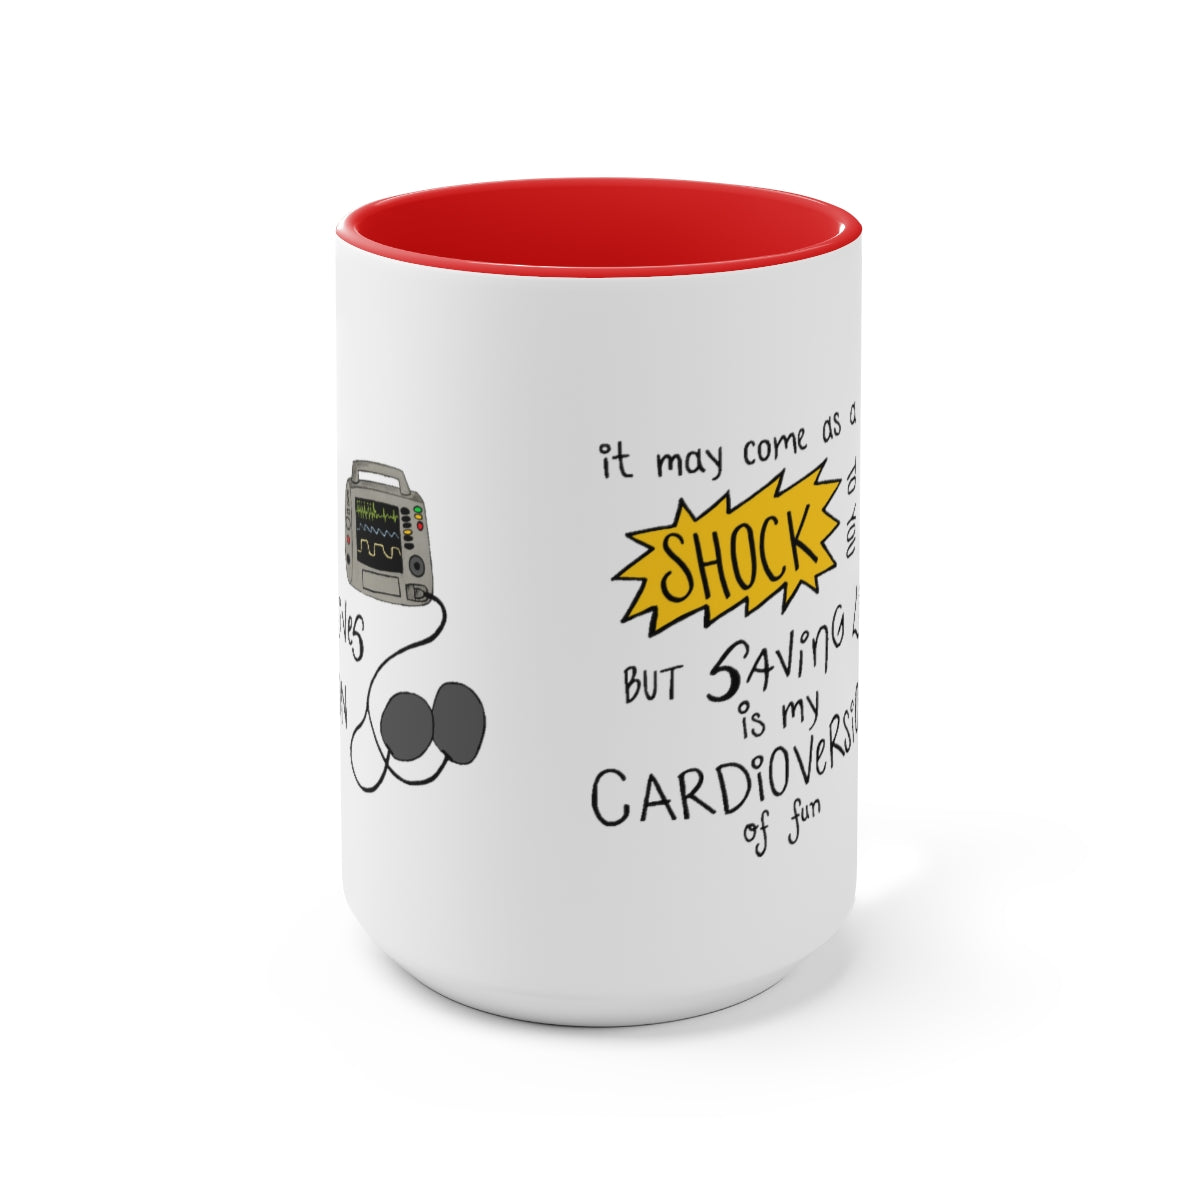 Cardioversion of Fun Two-Tone Coffee Mugs, 15oz